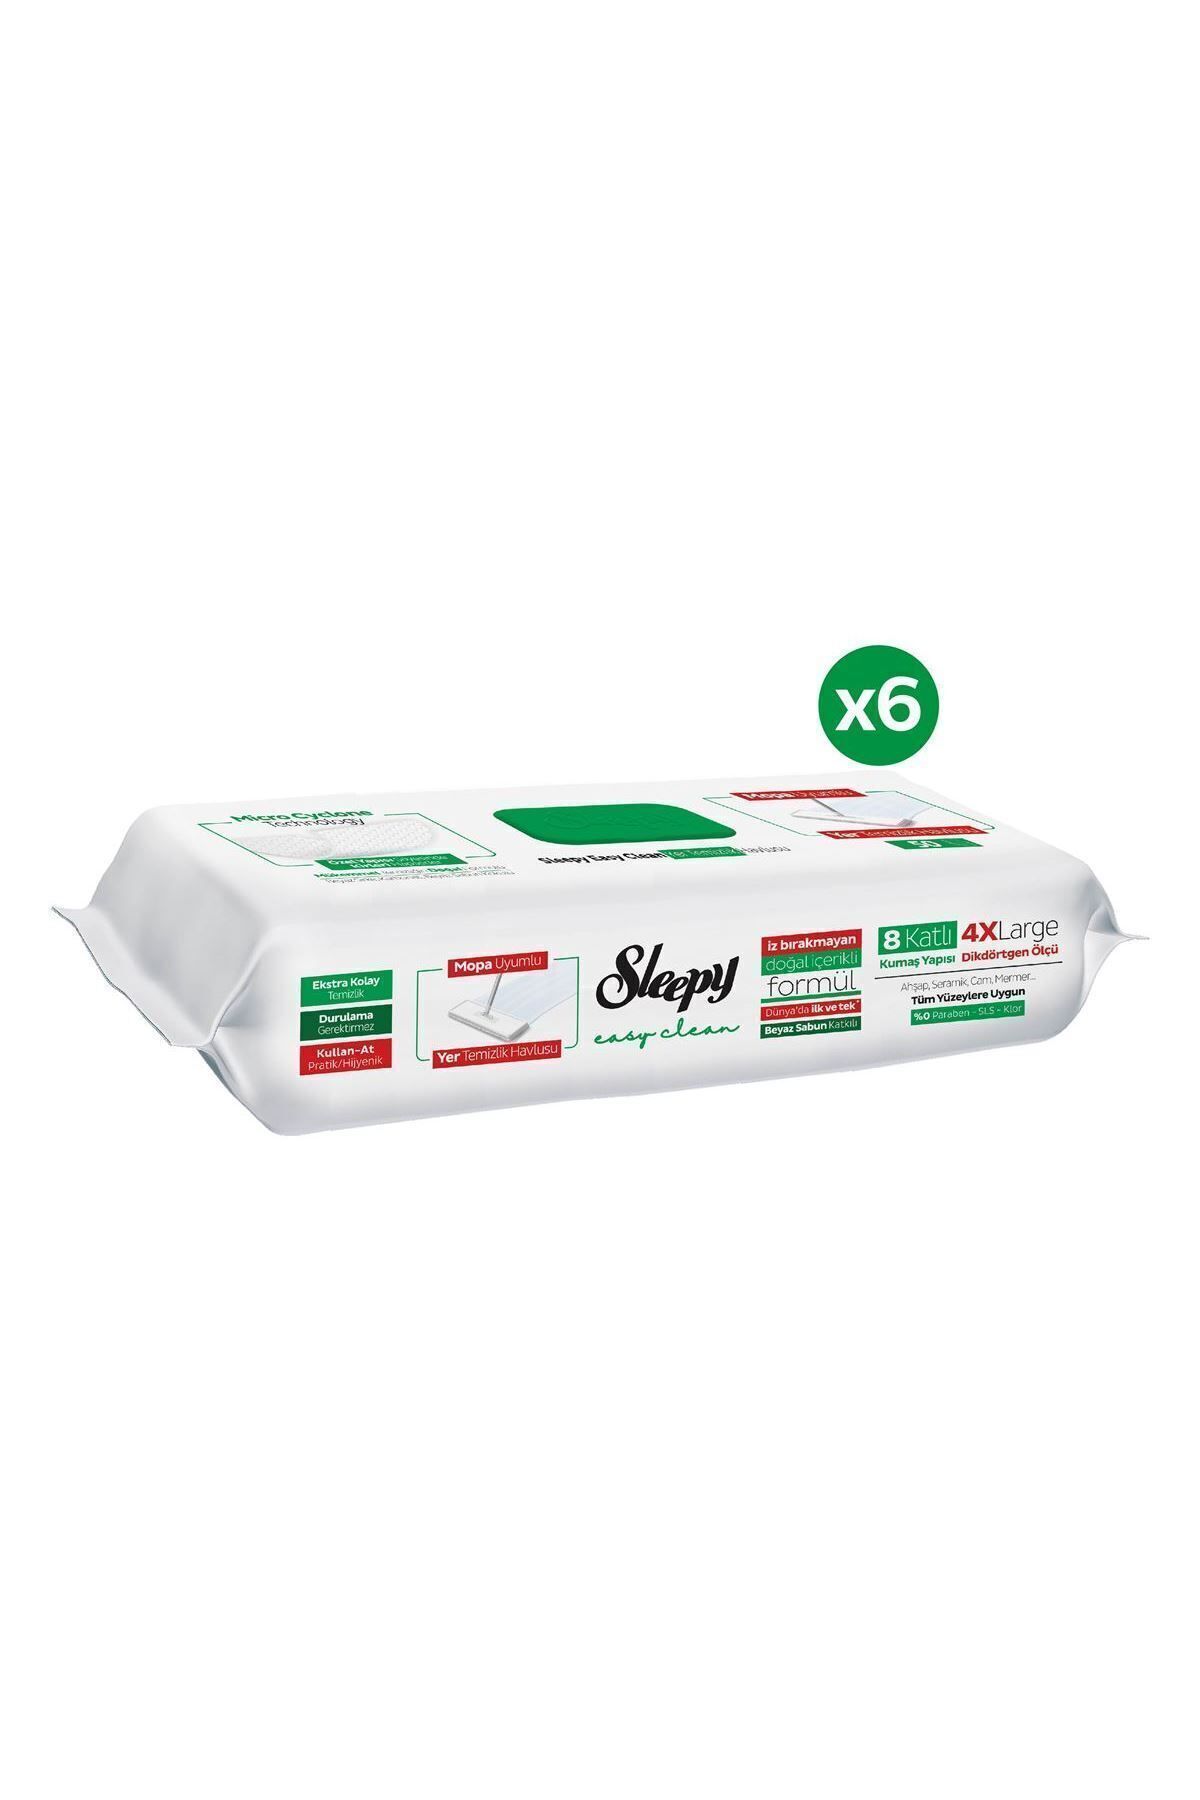 Sleepy Easy Clean Beyaz Sabun Katkılı Mopa Uyumlu Yer Temizlik Havlusu 6X50 (300 Yaprak)